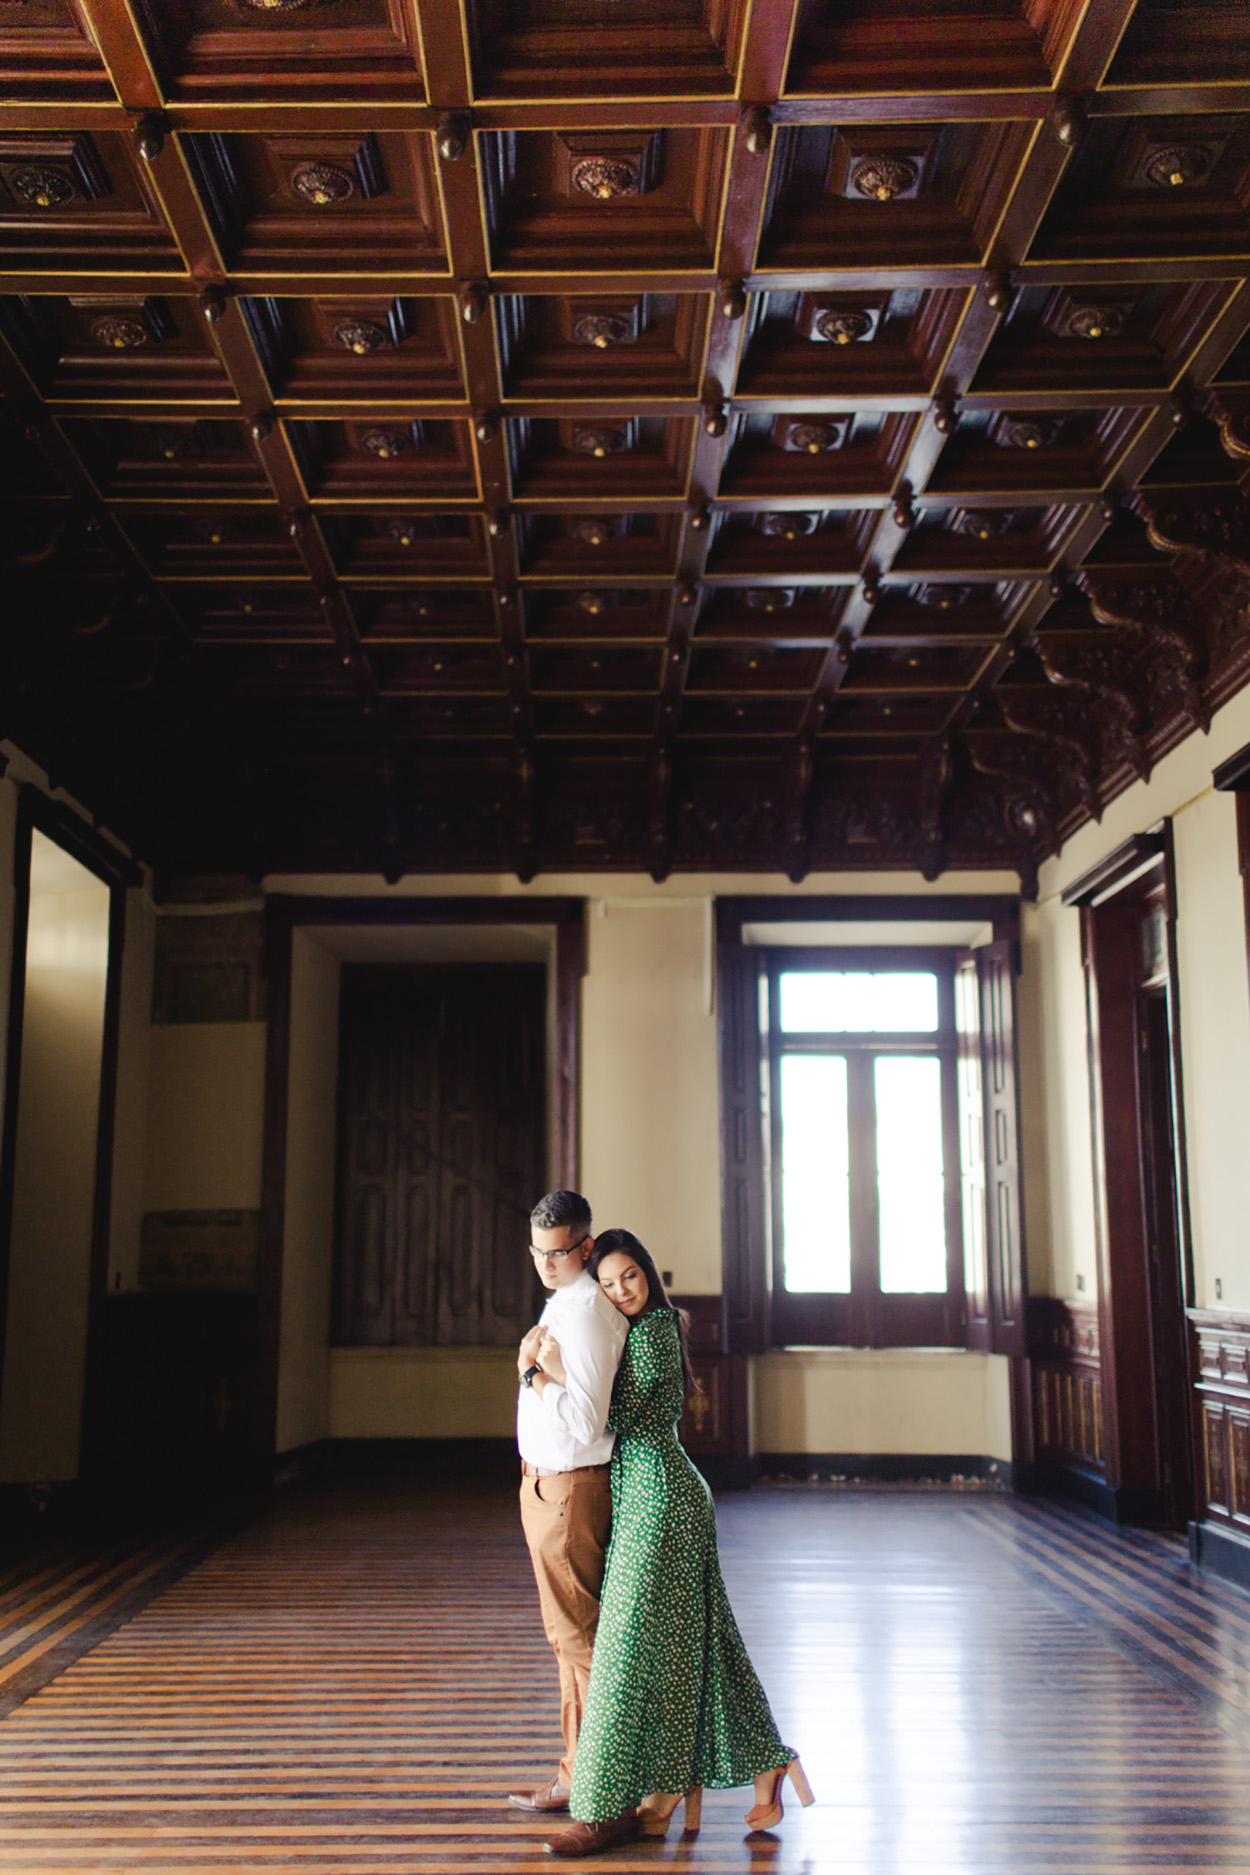 Casal abraçado em salão antigo